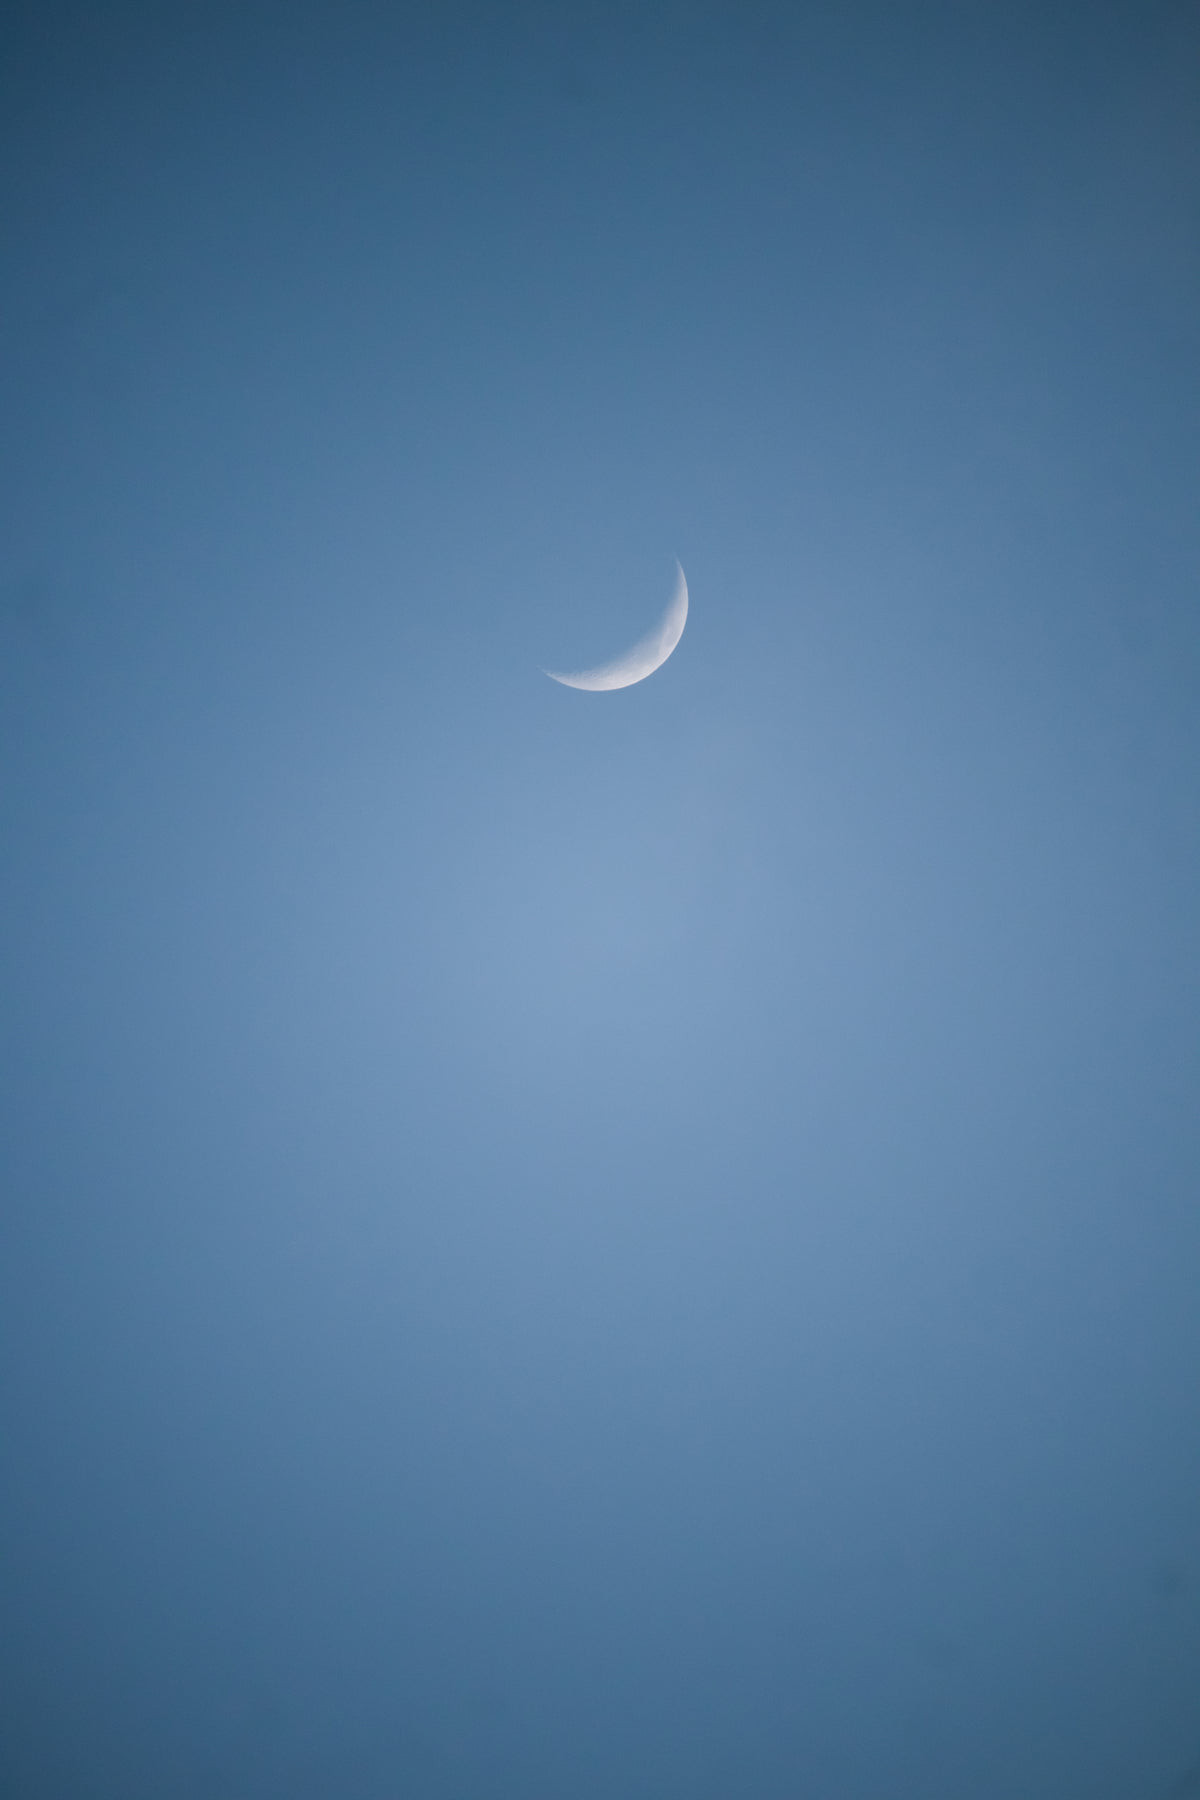 蓝色天空中的一小片月亮